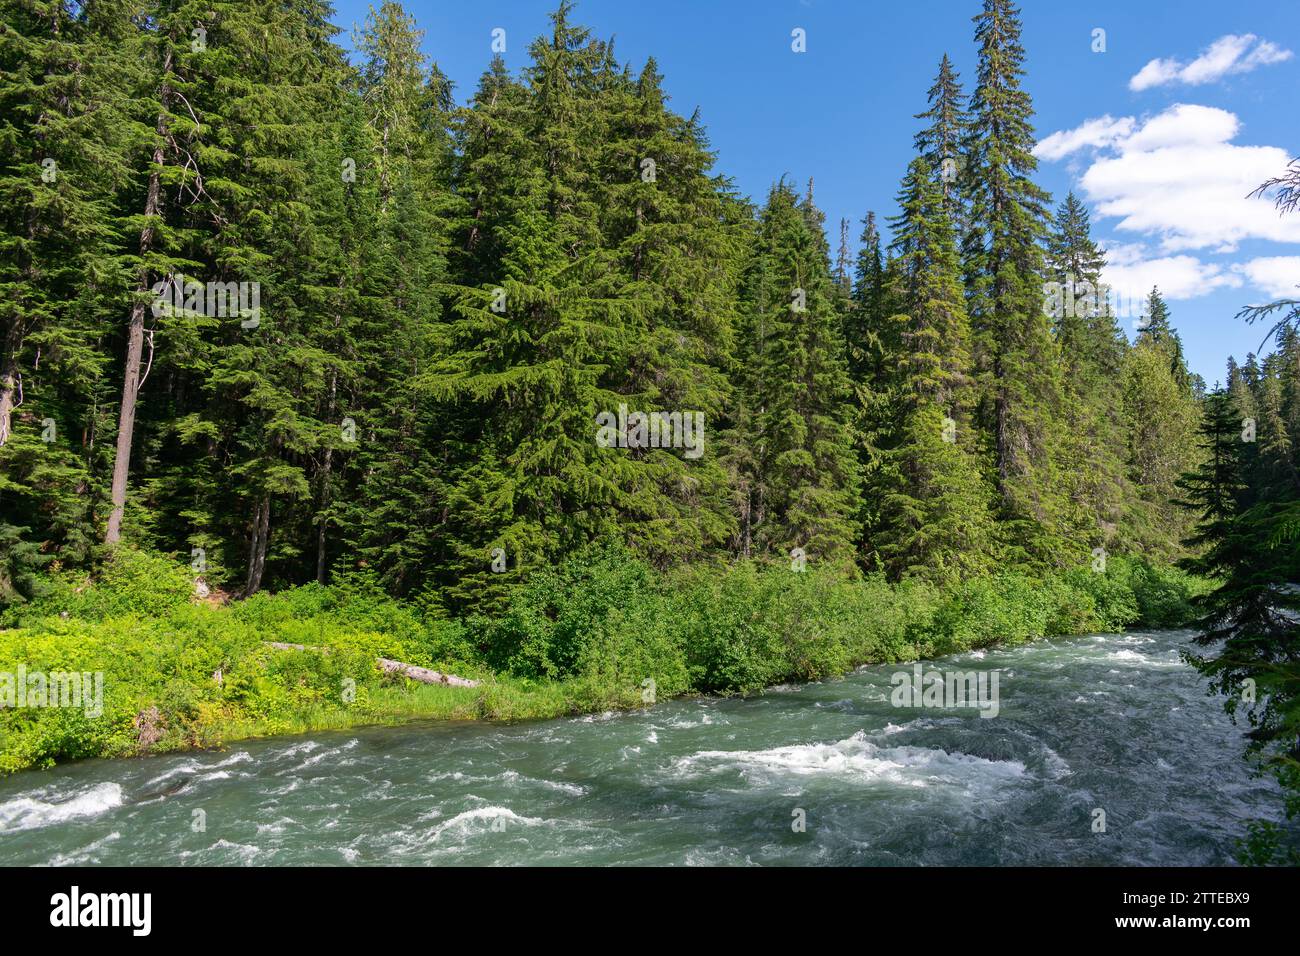 Il fiume Cheakamus scorre vigorosamente attraverso i fitti sempreverdi dell'affascinante natura selvaggia della Columbia Britannica. Foto Stock